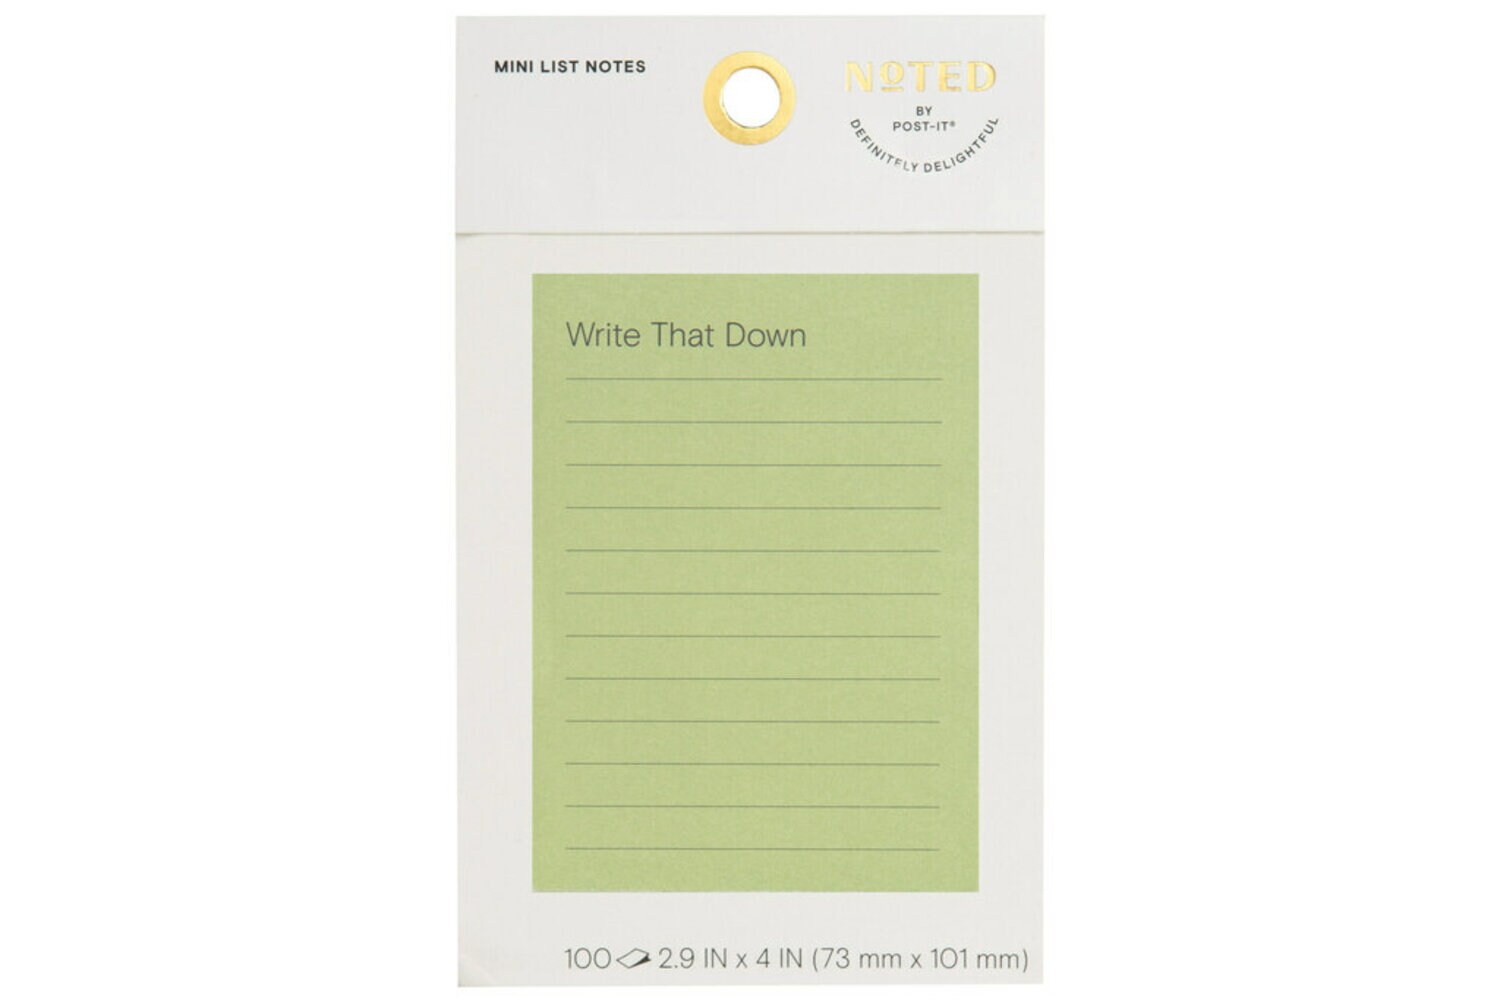 7100276034 - Post-it Mini List Notes NTD6-34-1, 4 in x 2.9 in (101 mm x 73 mm)